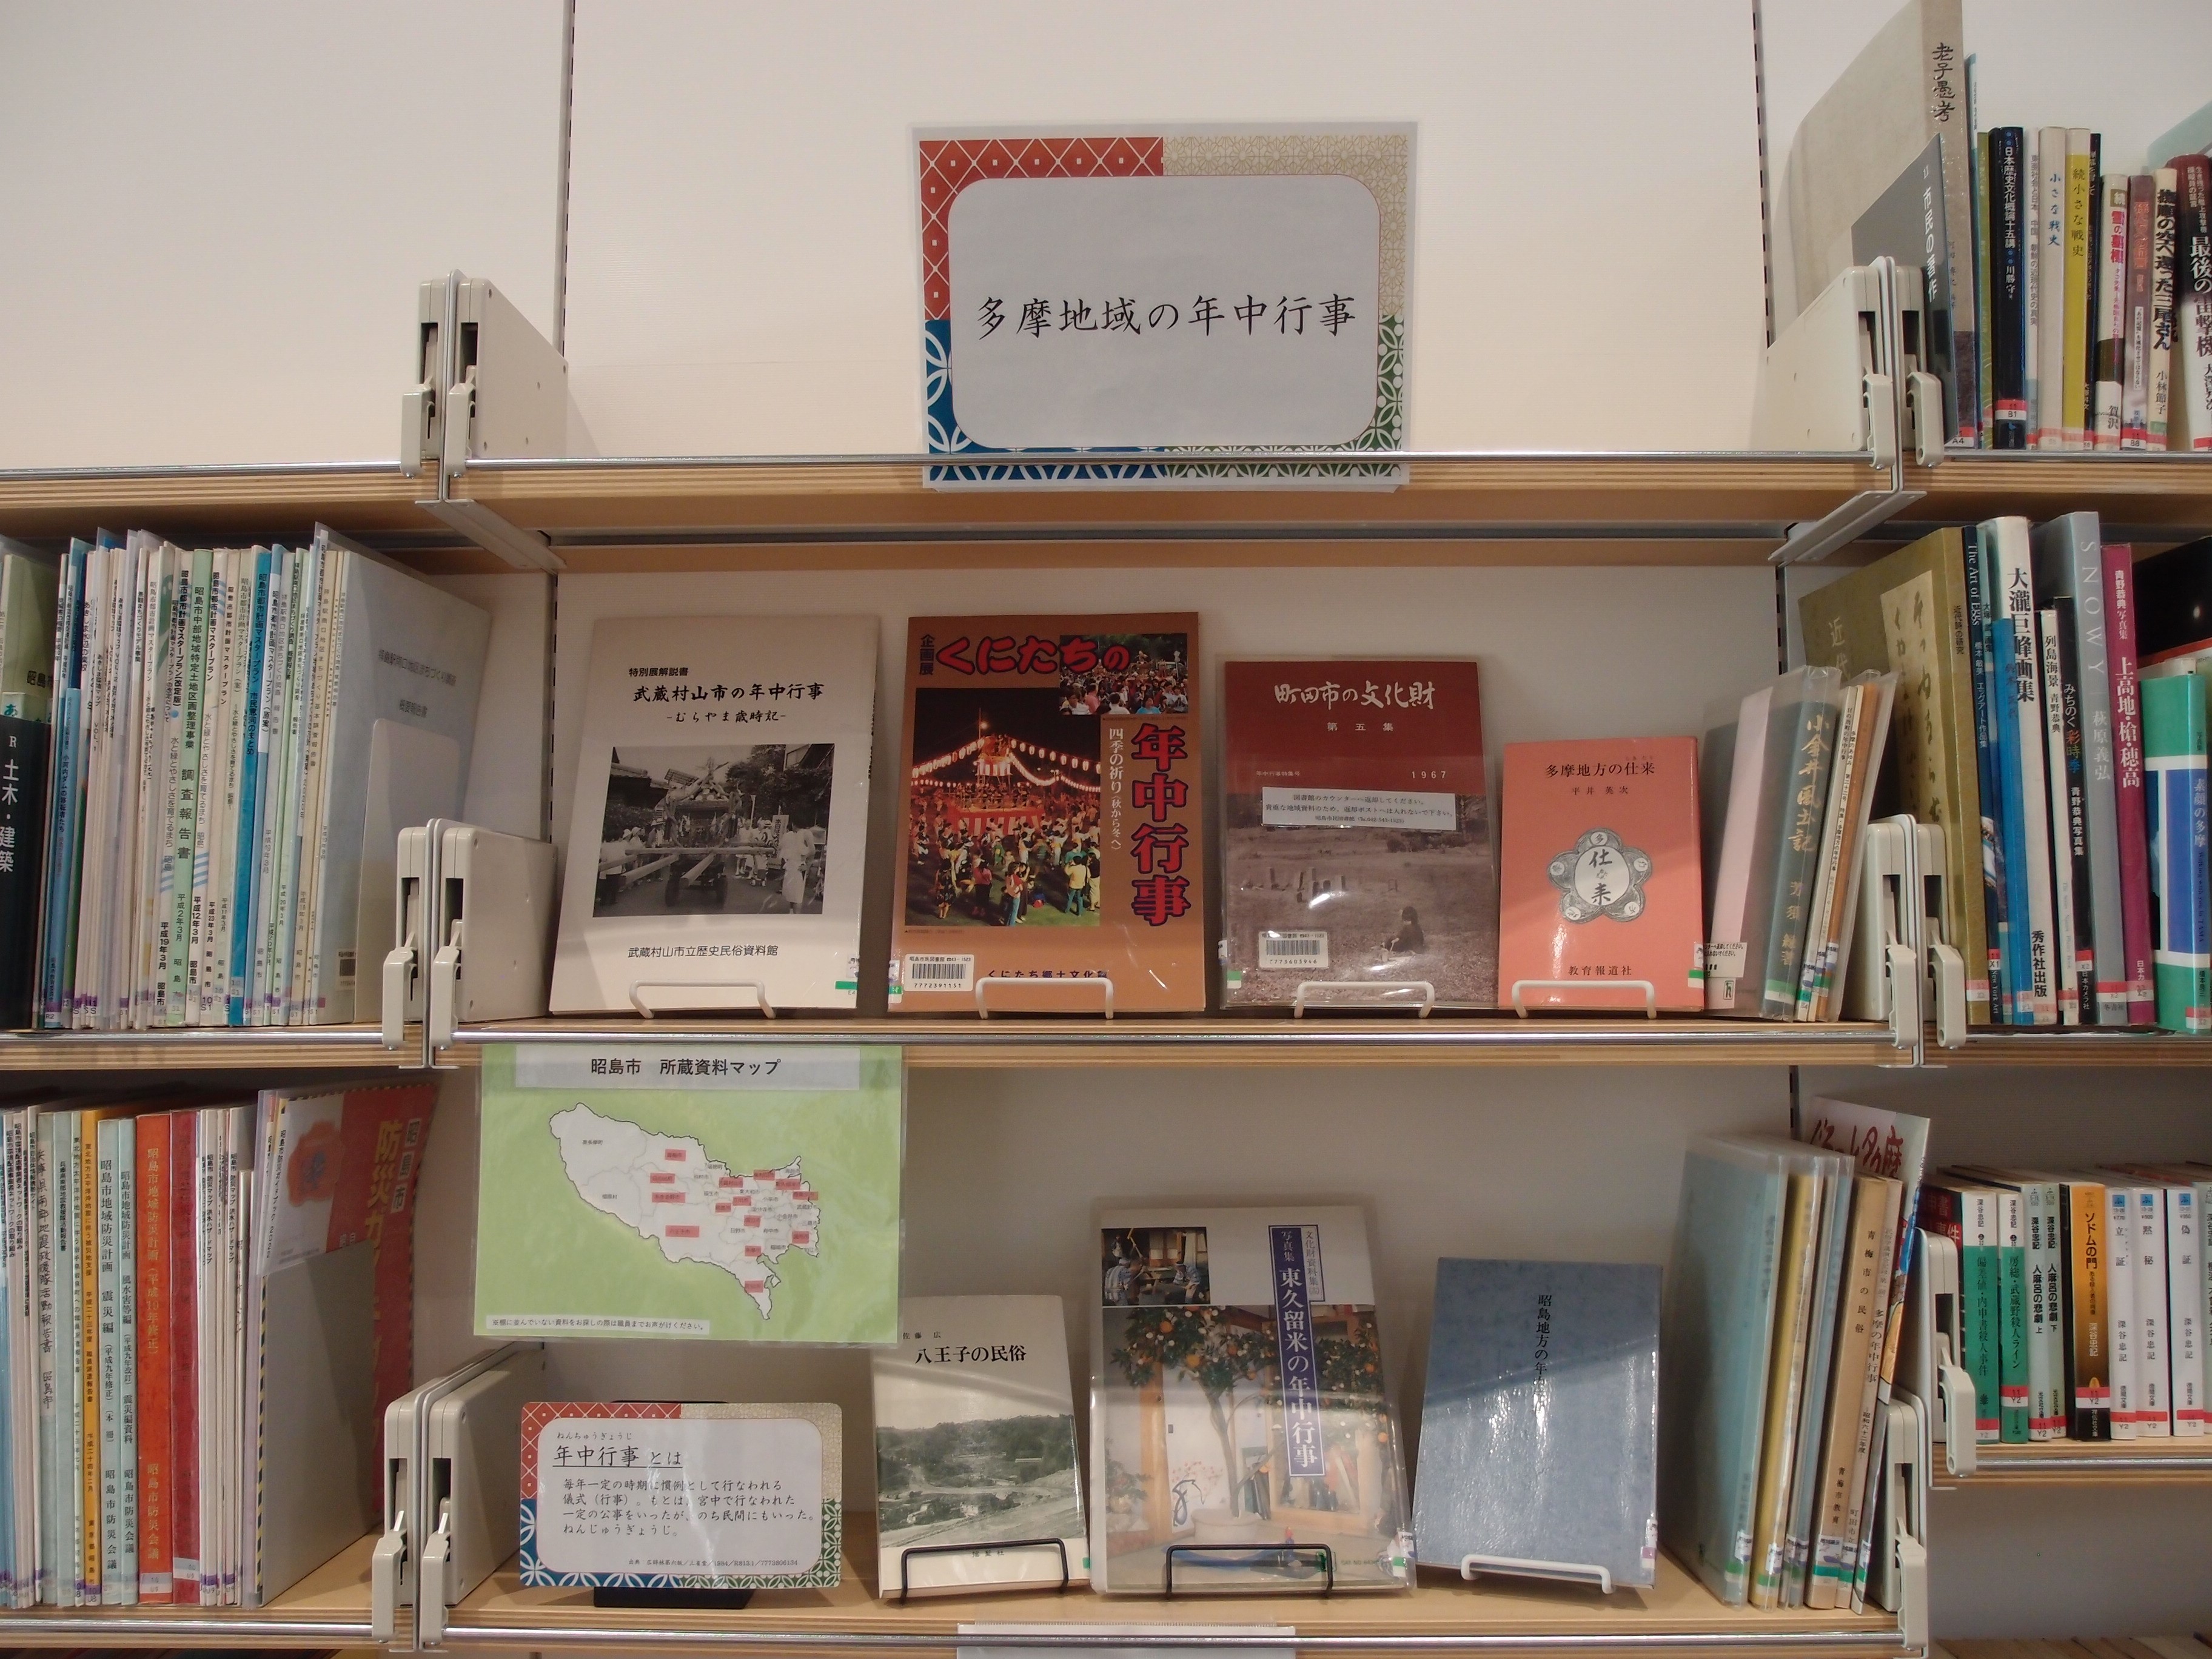 地域資料展示「多摩地域の年中行事」で展示中の本の写真